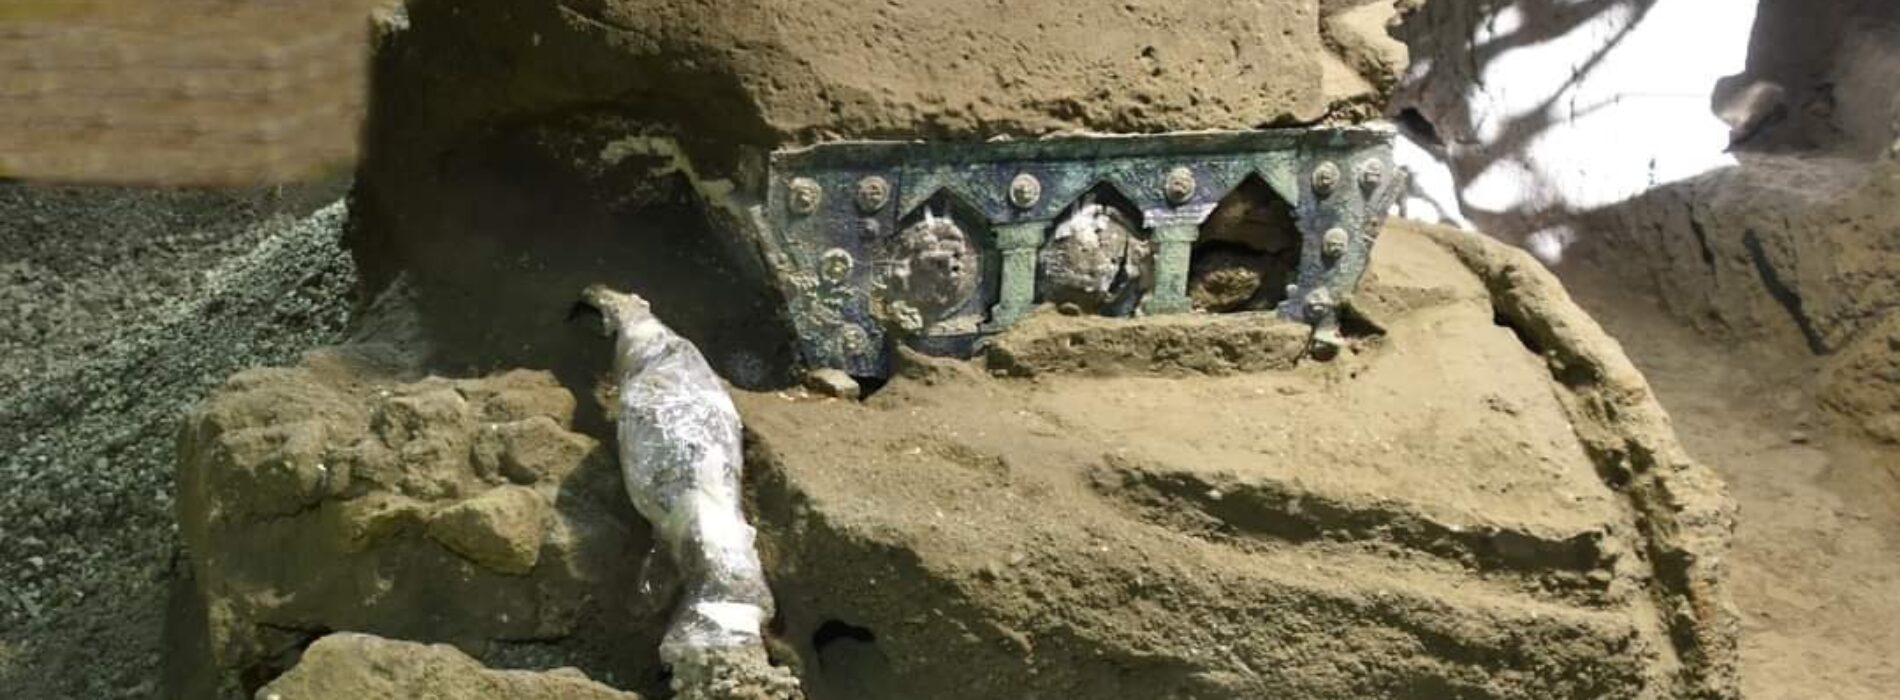 Nozze a Pompei, dagli scavi affiora il grande carro cerimoniale